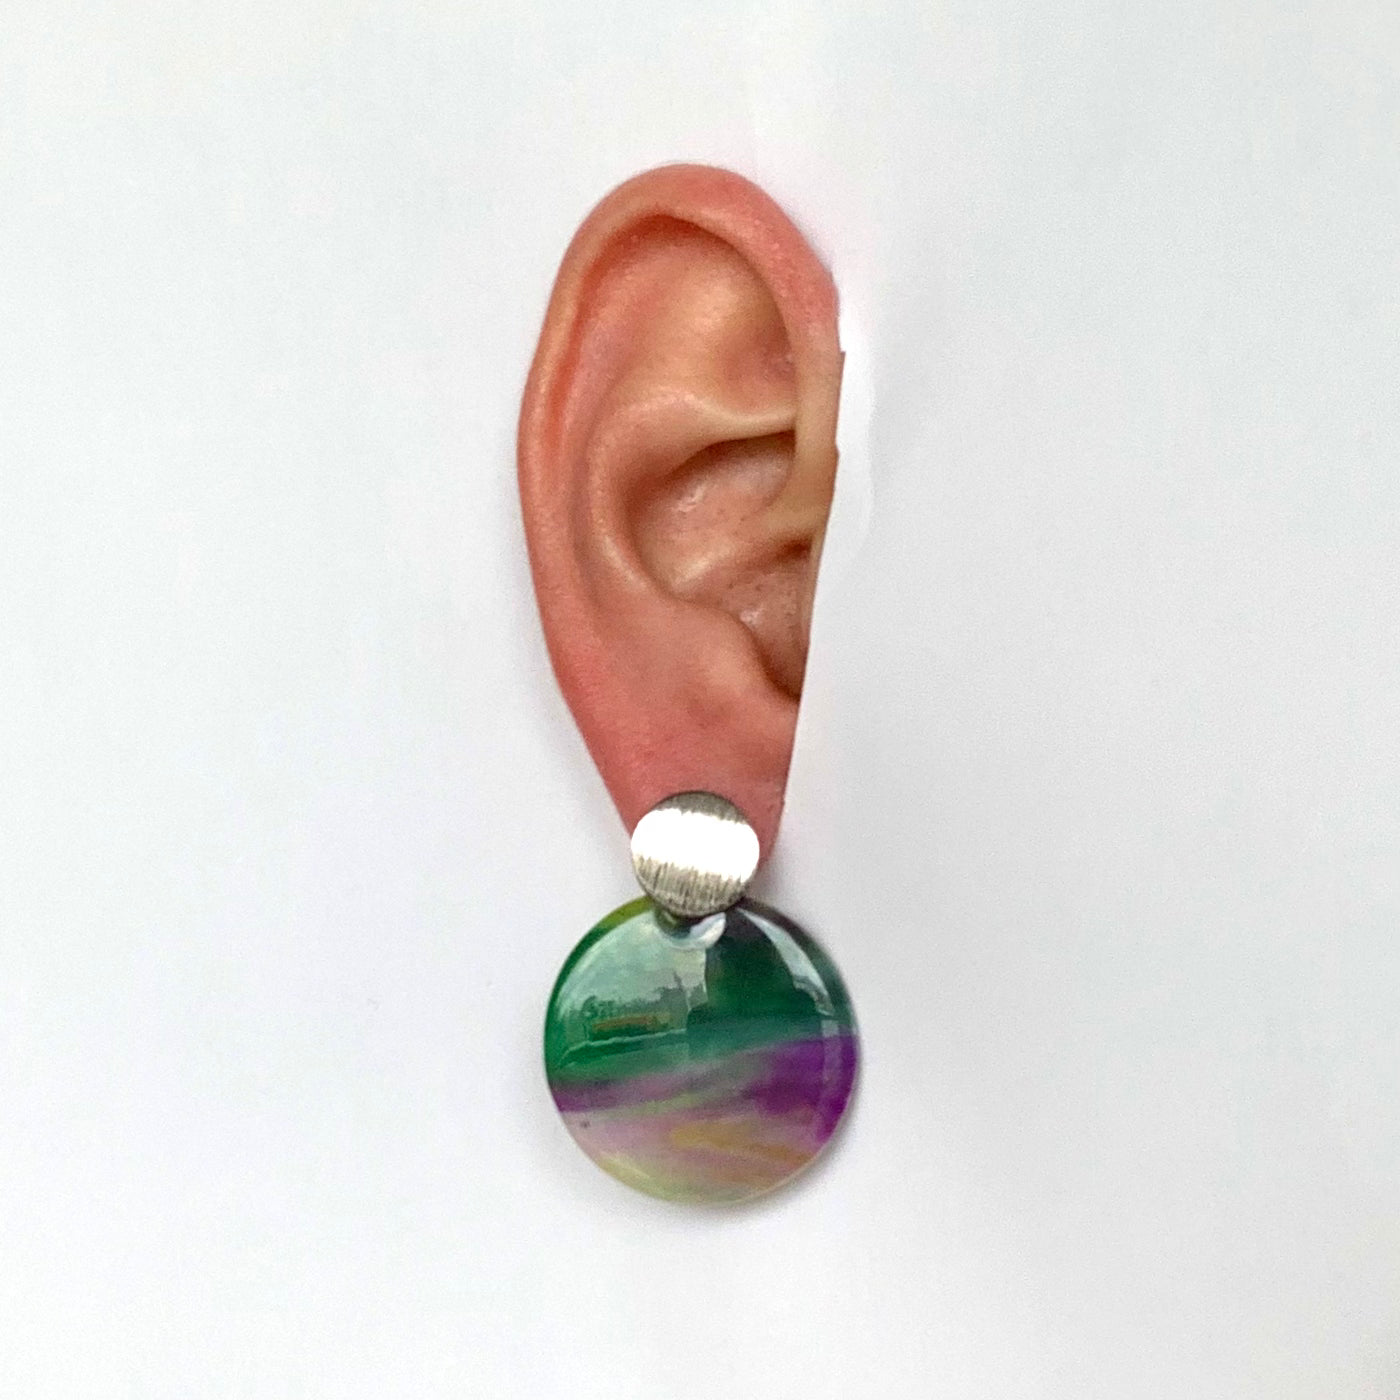 Recycled Bottle tops earrings handmade in London green purple silver